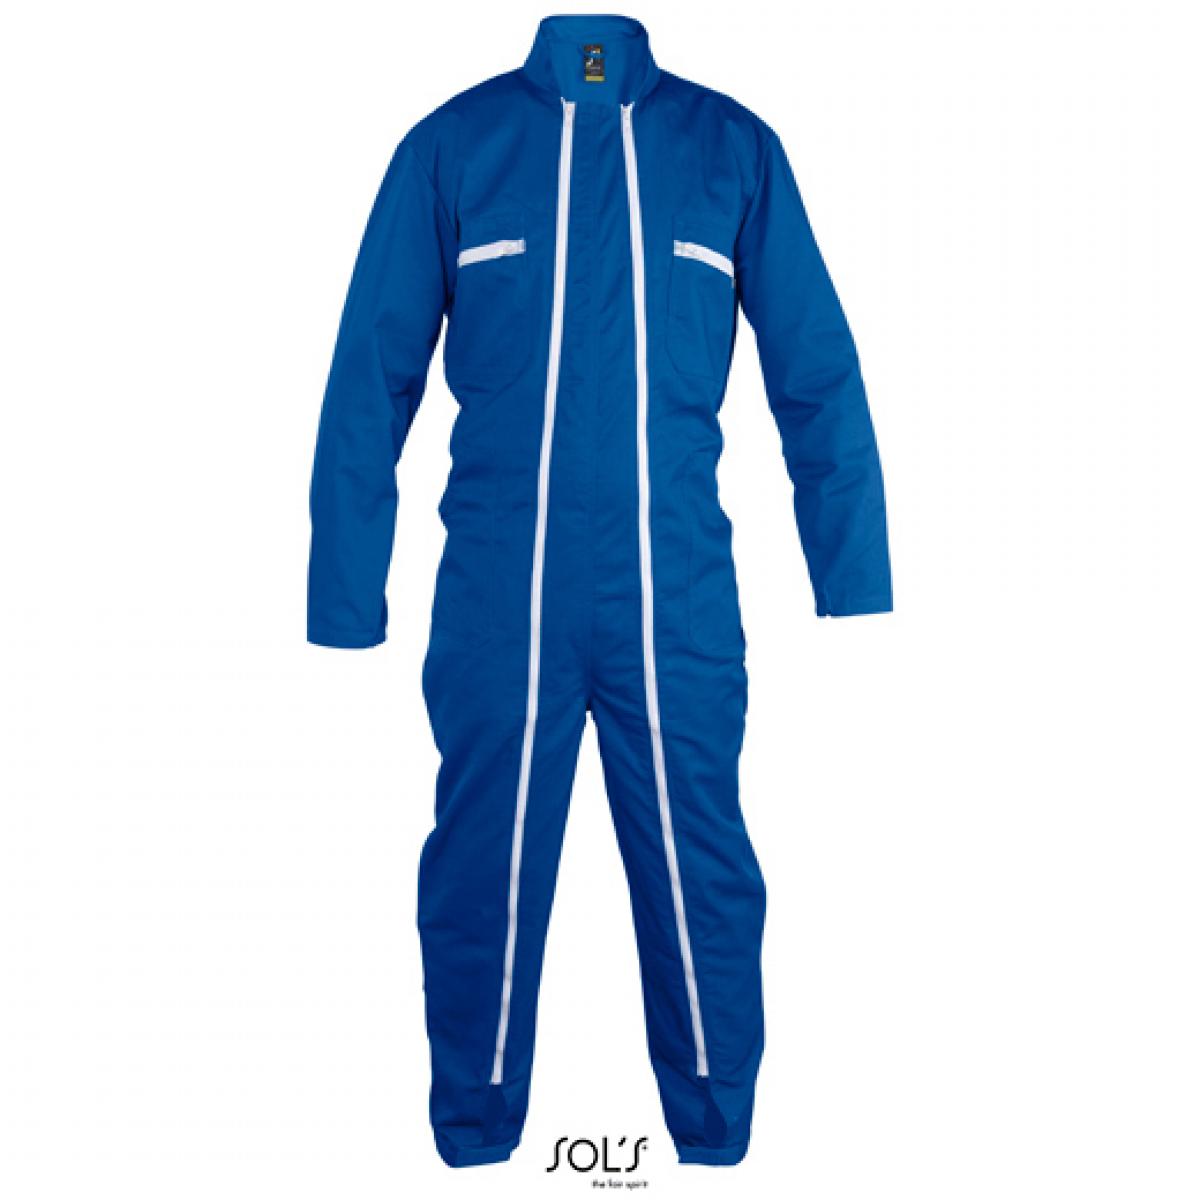 Hersteller: SOLs ProWear Herstellernummer: 80901 Artikelbezeichnung: Workwear Overall Jupiter Pro - Waschbar bis 60 °C Farbe: Bugatti Blue